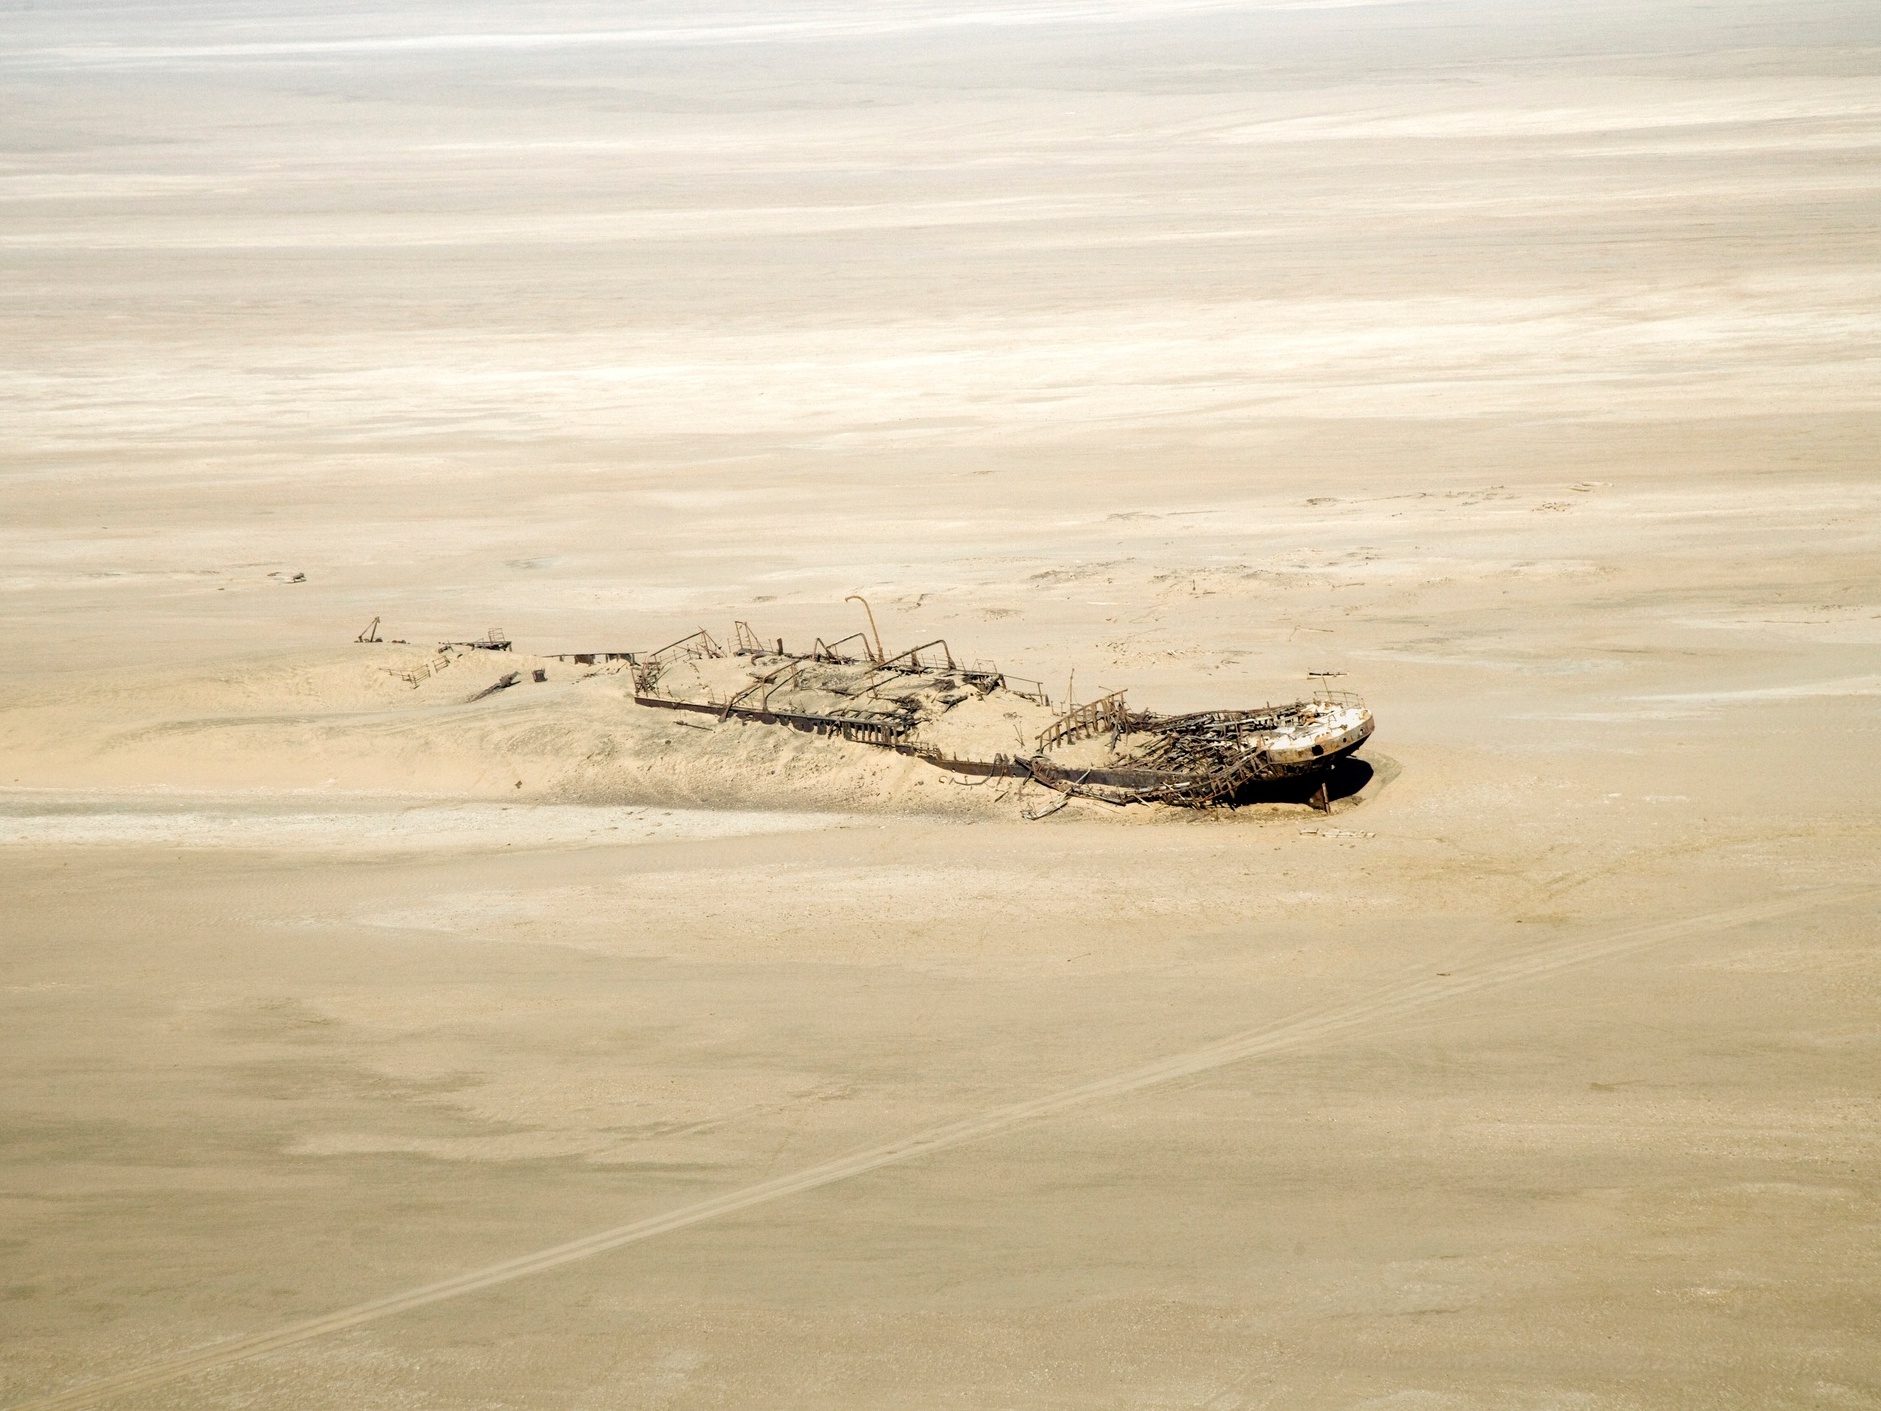 homem quase se afunda em areia movediça em meio ao deserto #fyyyy #new